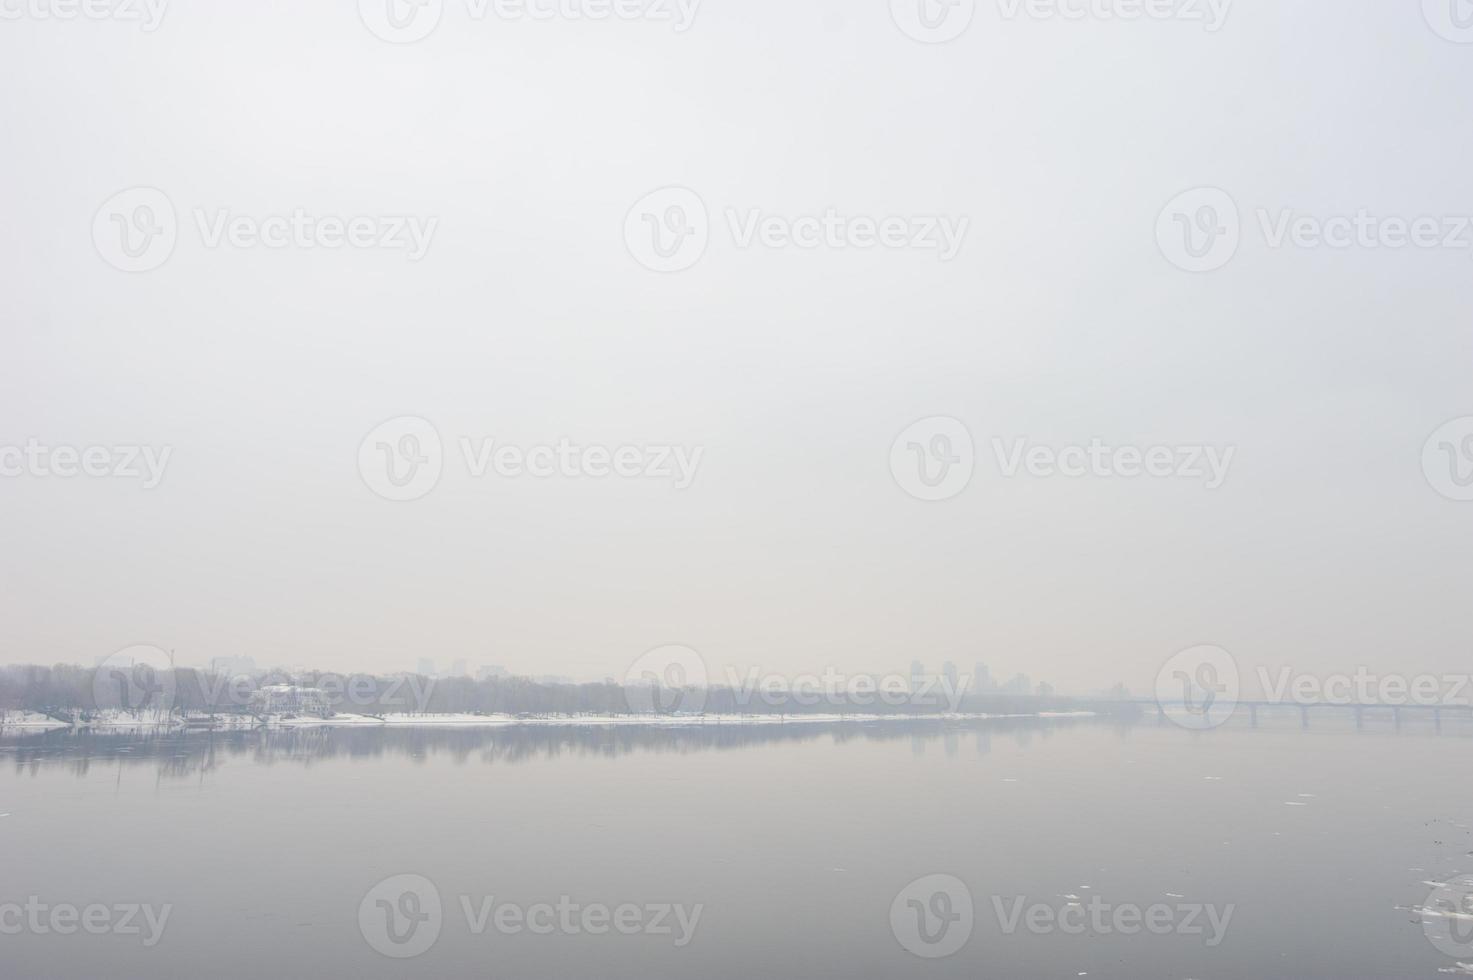 tung morgondimma över floden. vintertid. foto